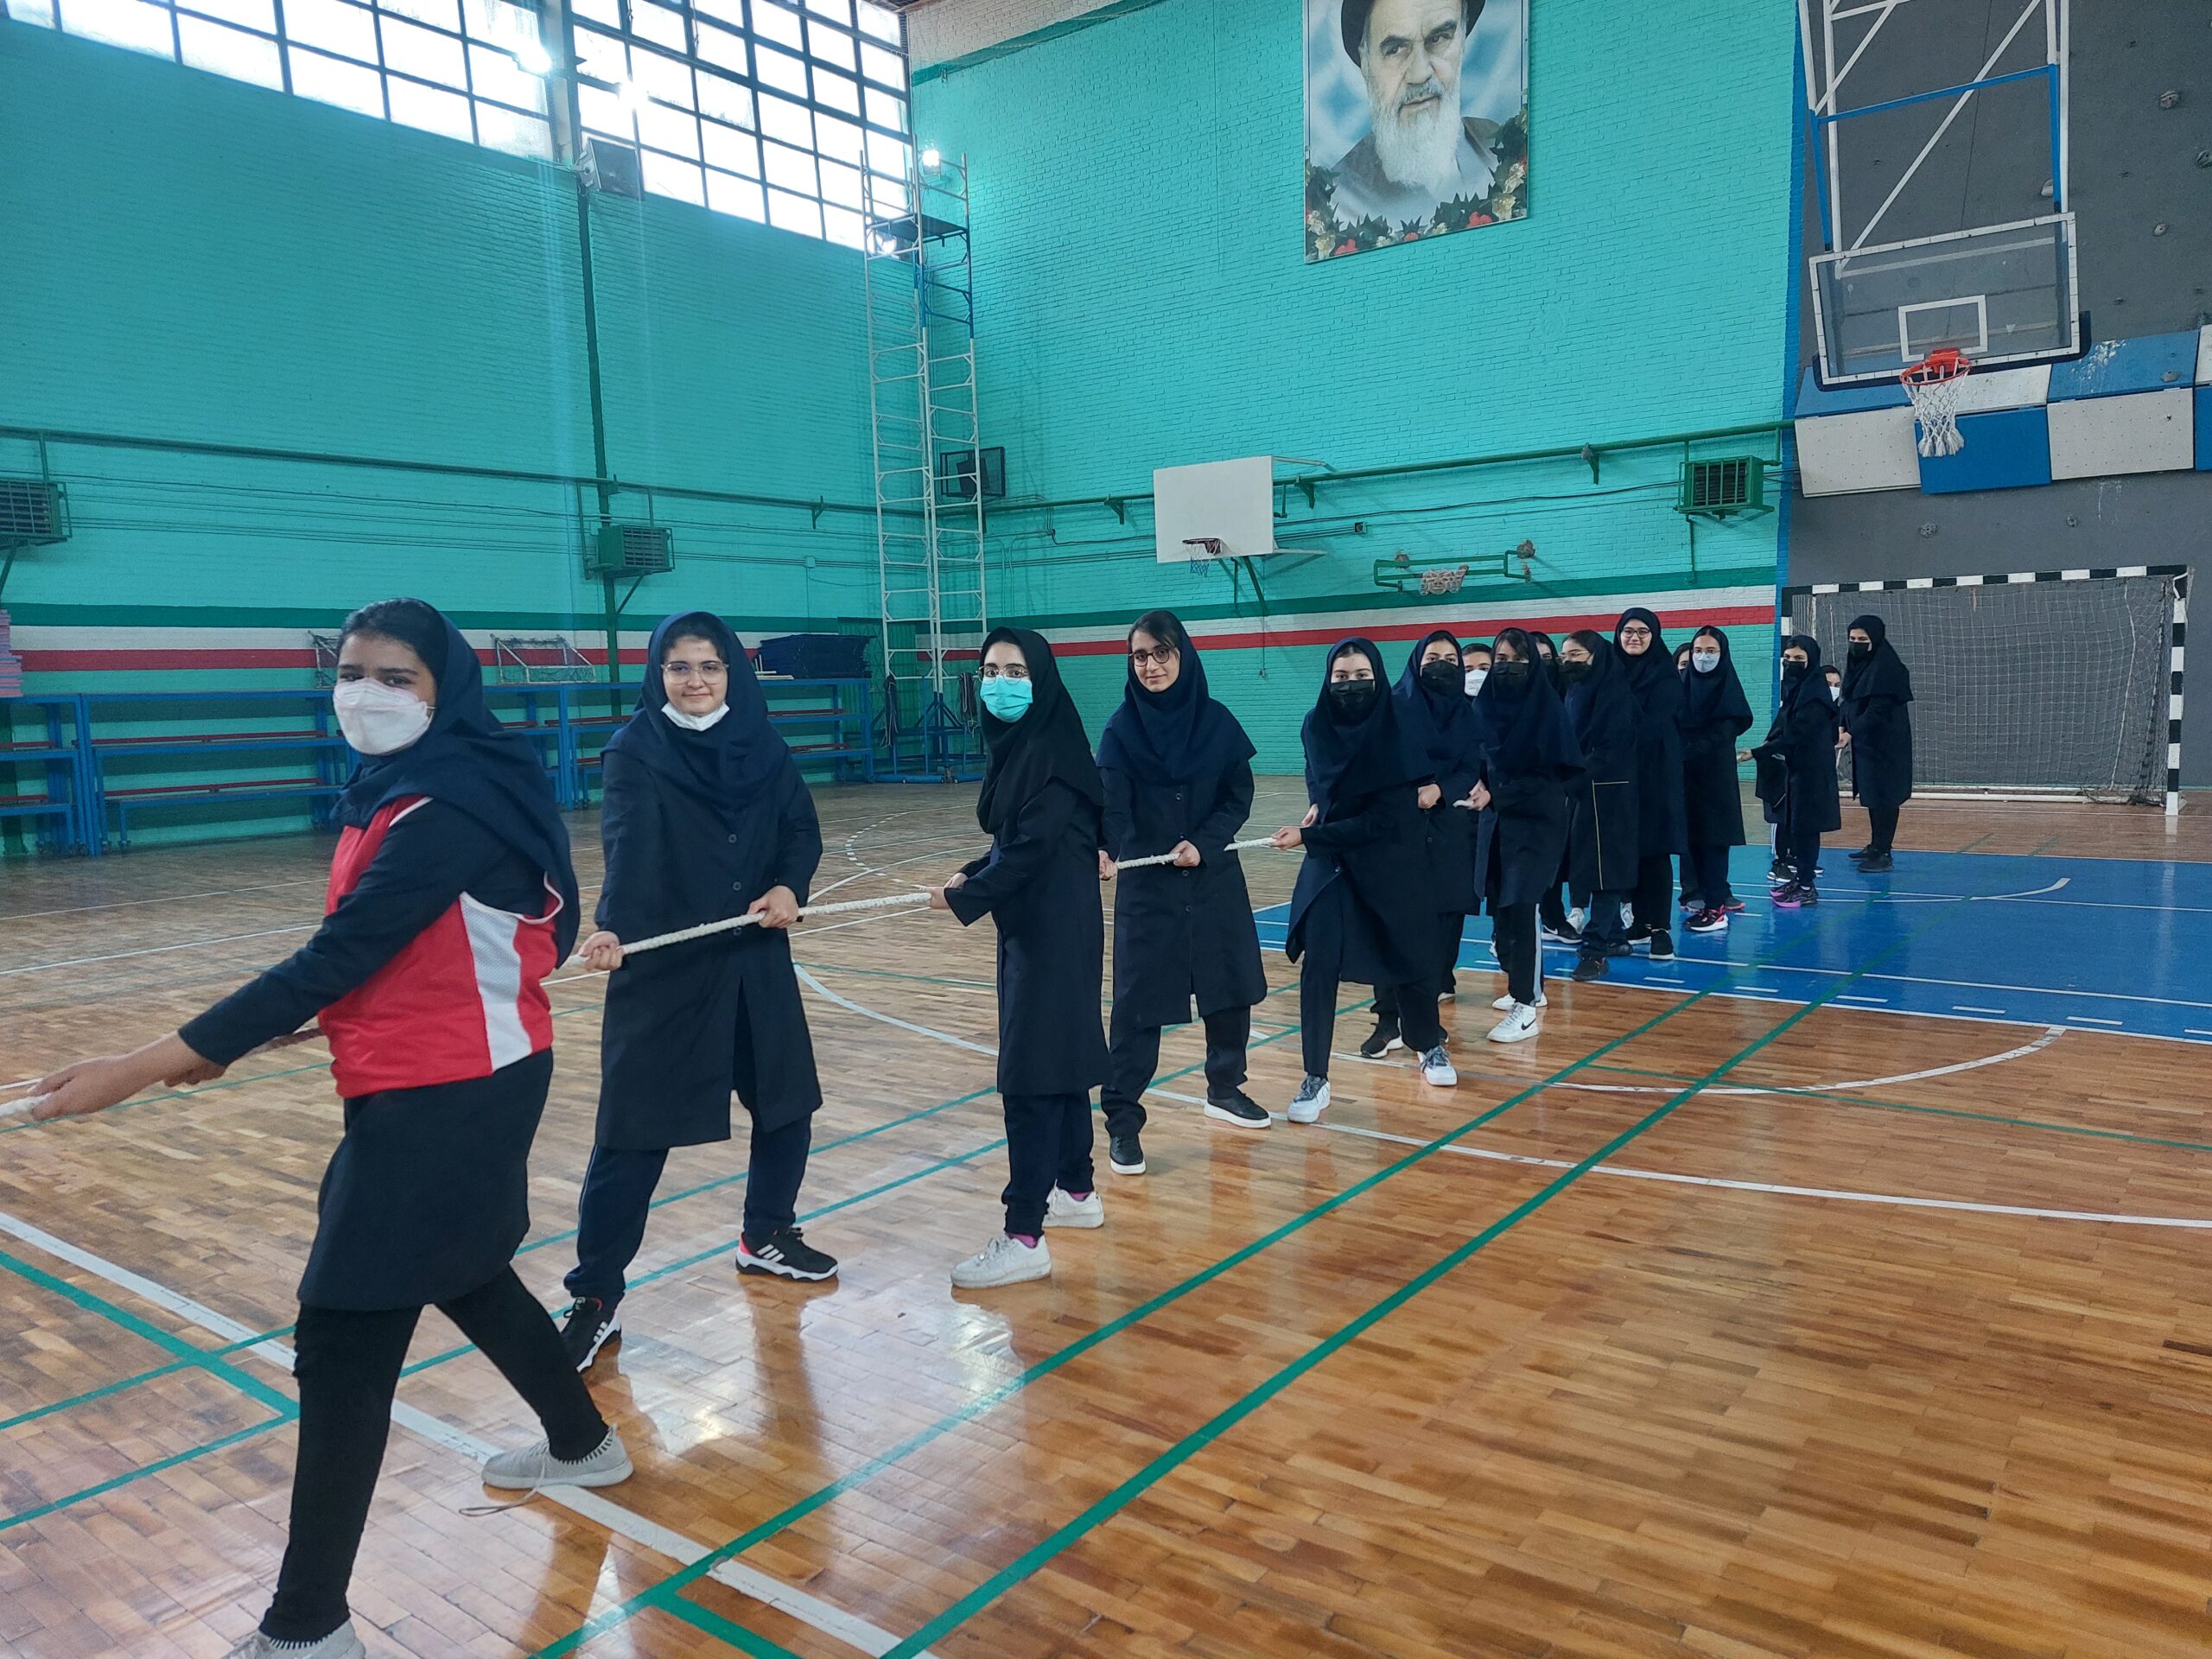 مسابقات ورزشی درون مدرسه ای سلام سلیمه